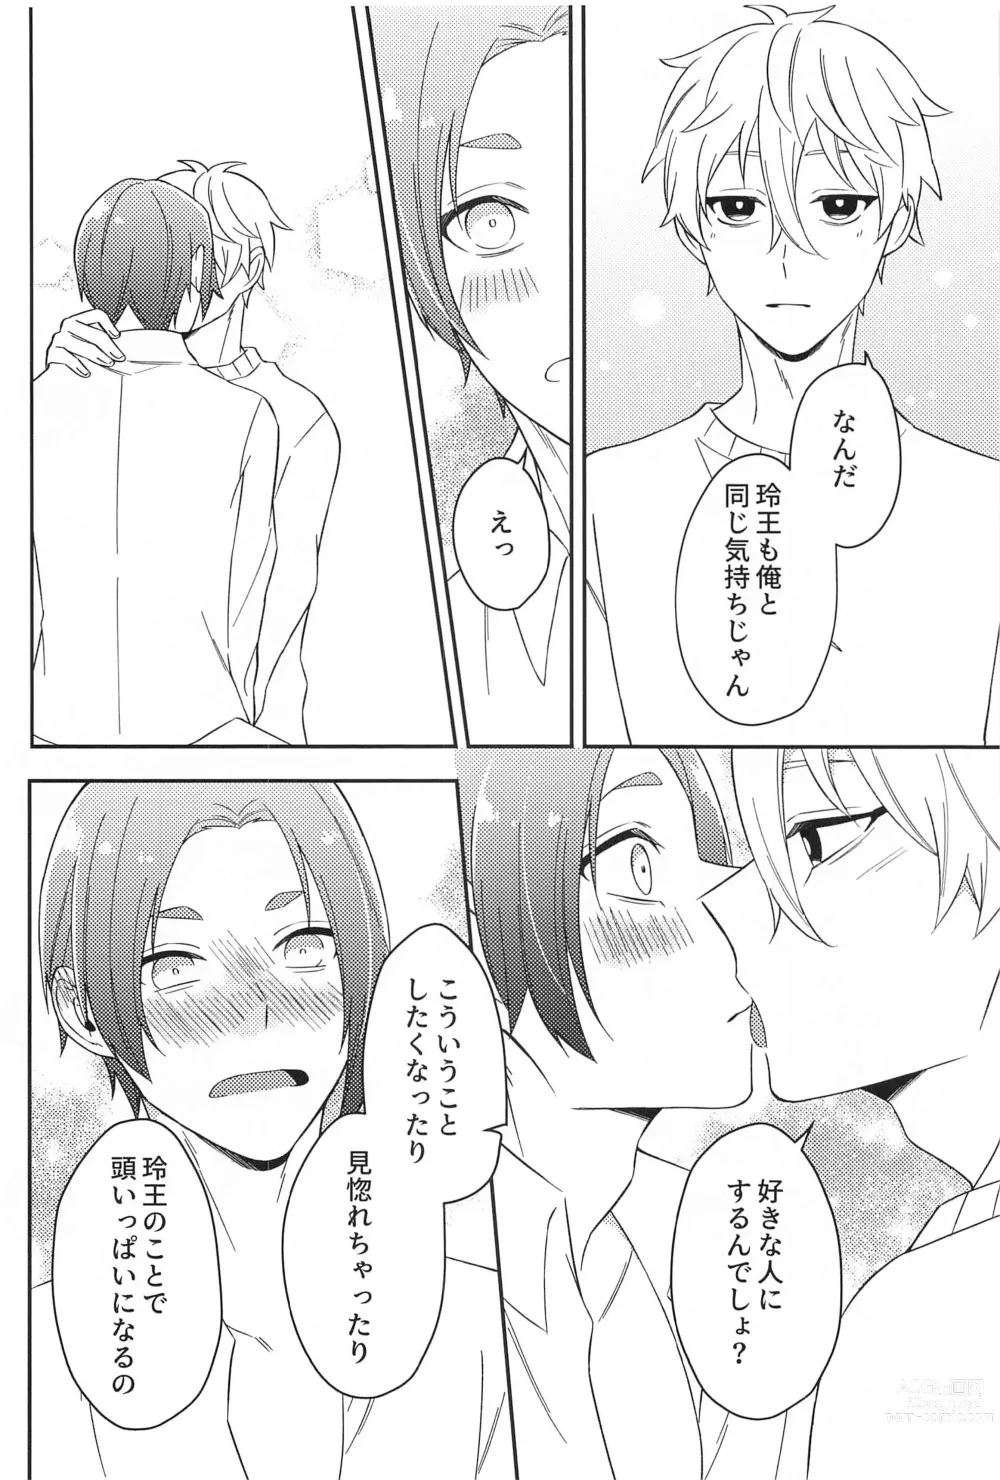 Page 21 of doujinshi Sore ni Namae o Tsukeru nara